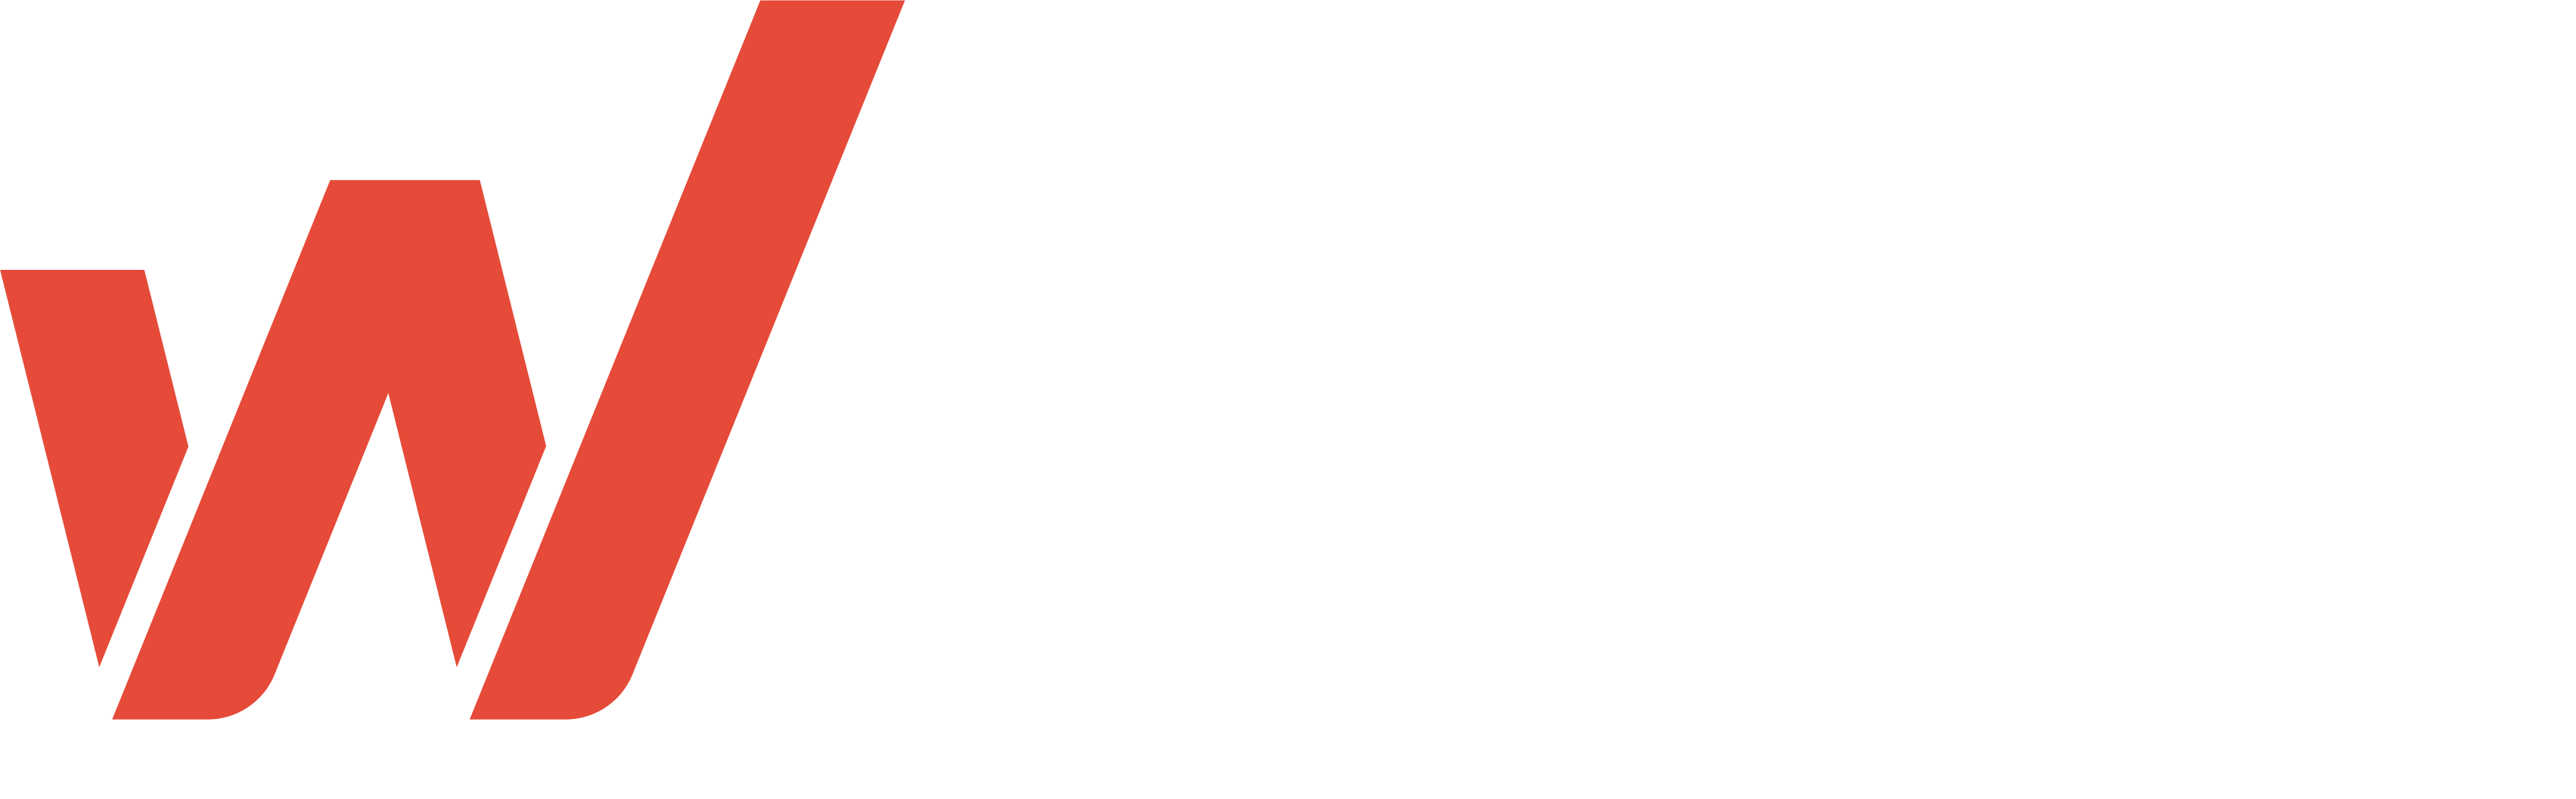 Women in Games logo.